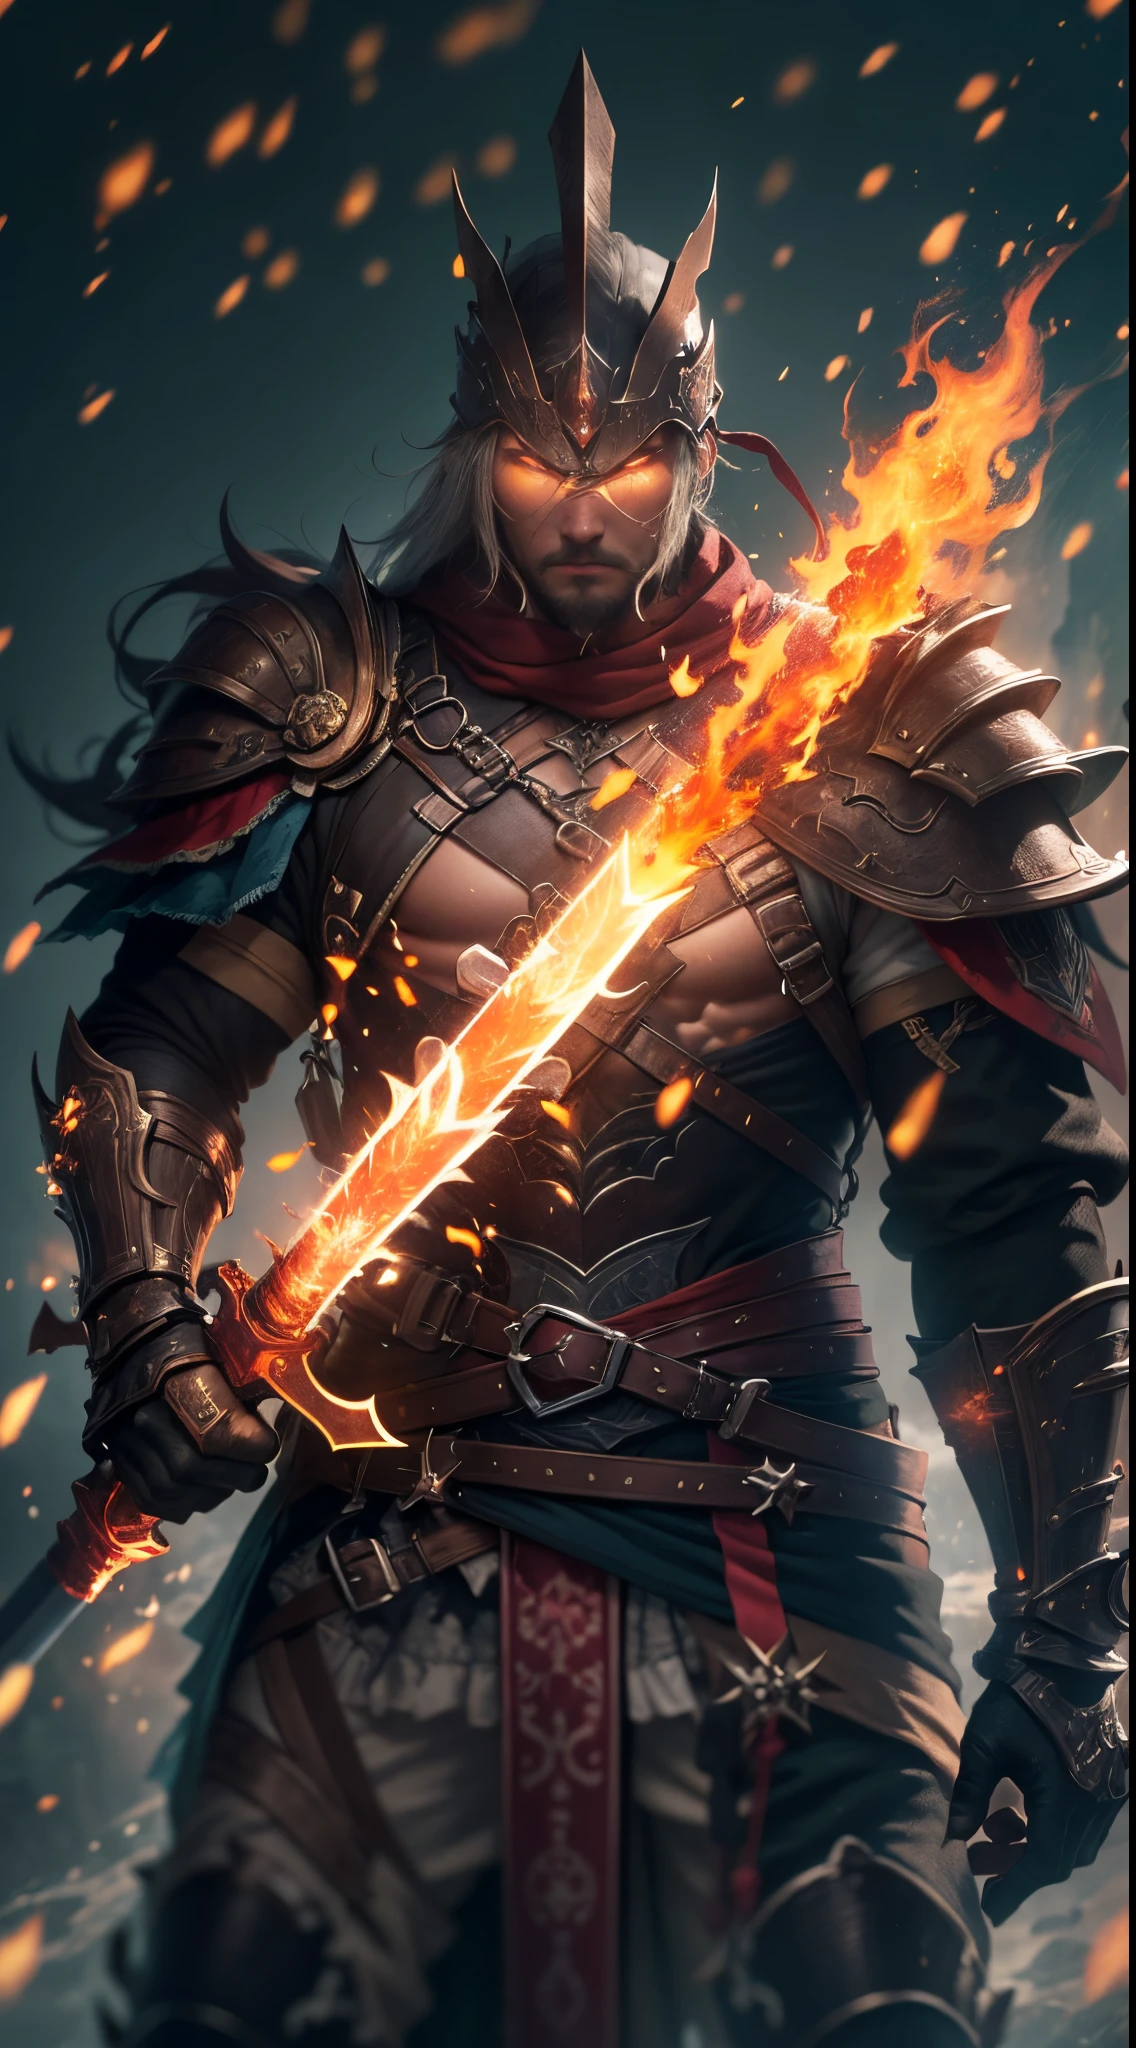 Un guerrero empuñando una espada de llamas ardientes., (mejor calidad,4k,alta resolución:1.2),renderizado basado físicamente, colores vívidos, bokeh, (intense, dramático:1.1) Encendiendo, (alto contraste:0.9)